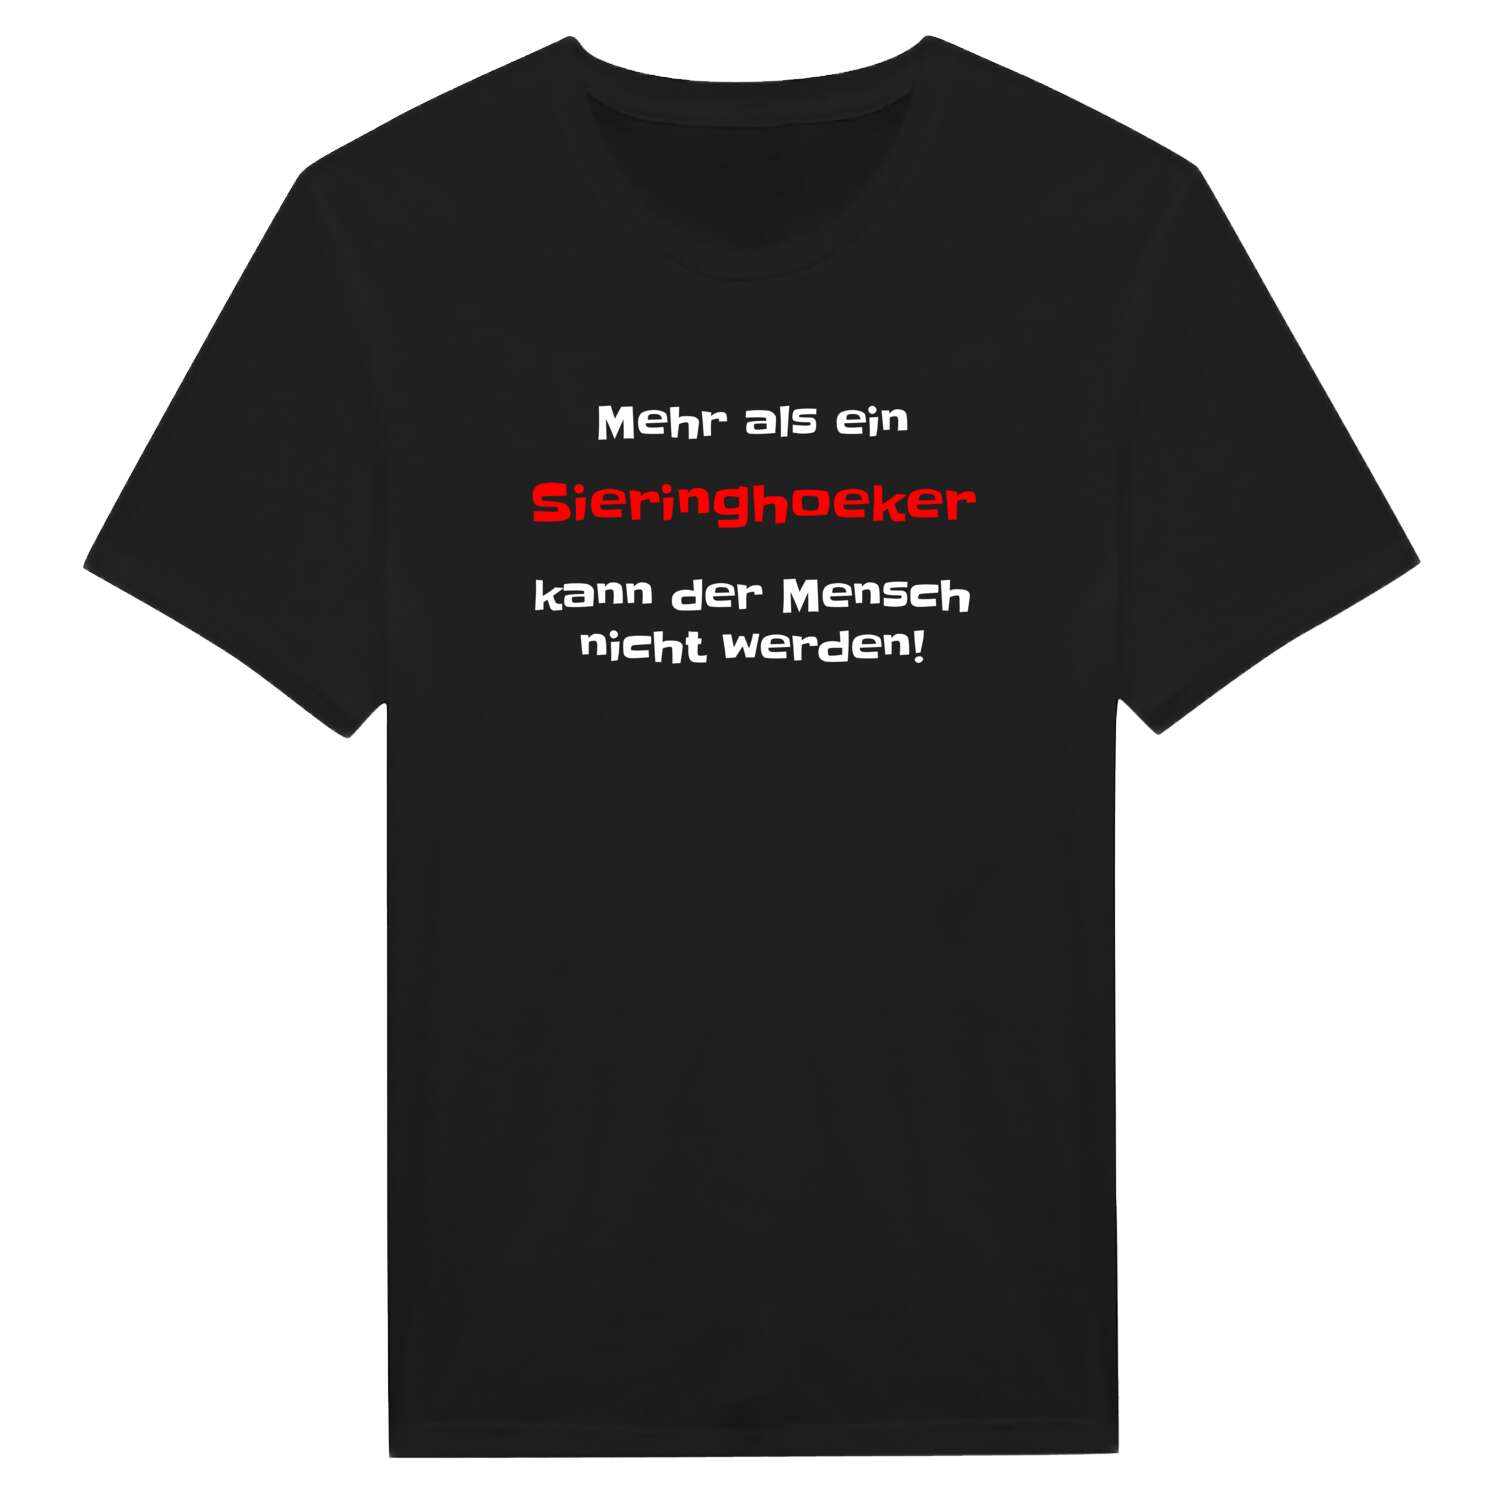 Sieringhoek T-Shirt »Mehr als ein«